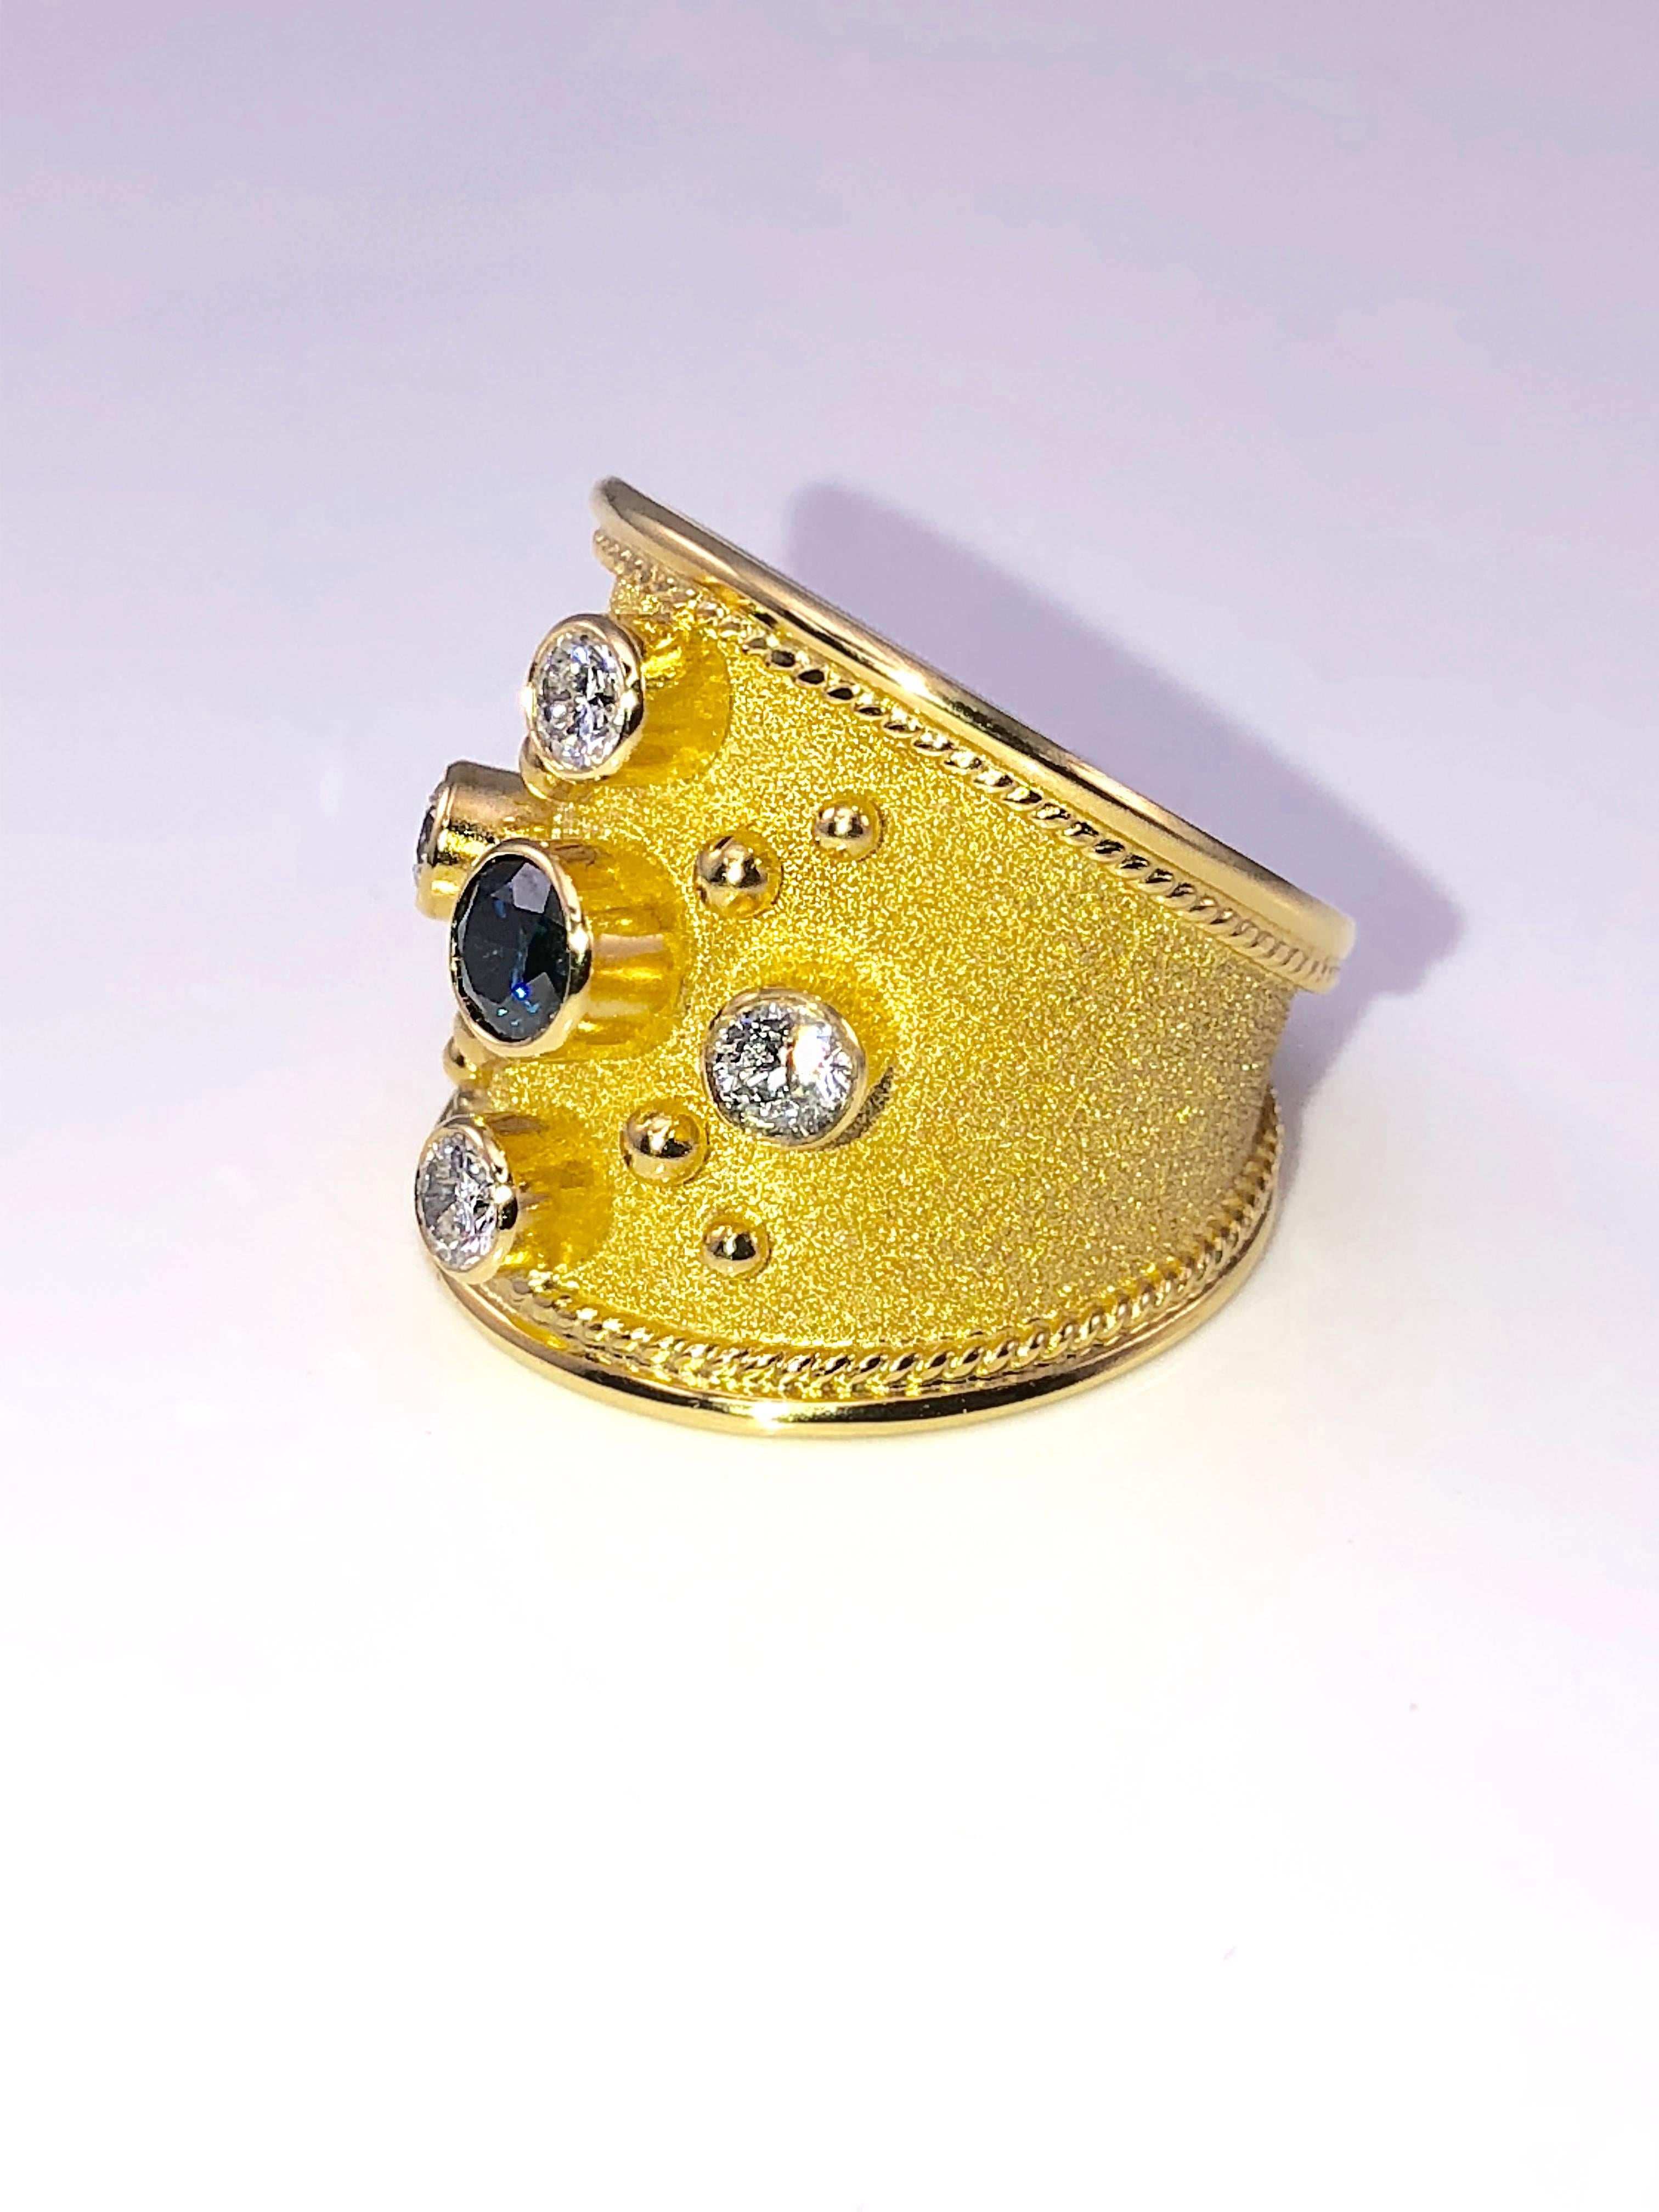 Einzigartiger S.Georgios Designer-Ring aus 18 Karat Gelbgold, handgefertigt mit byzantinischer Granulierung und einem wunderschönen Samt-Finish auf dem Hintergrund. Der wunderschöne Ring hat einen blauen Diamanten im Brillantschliff mit einem